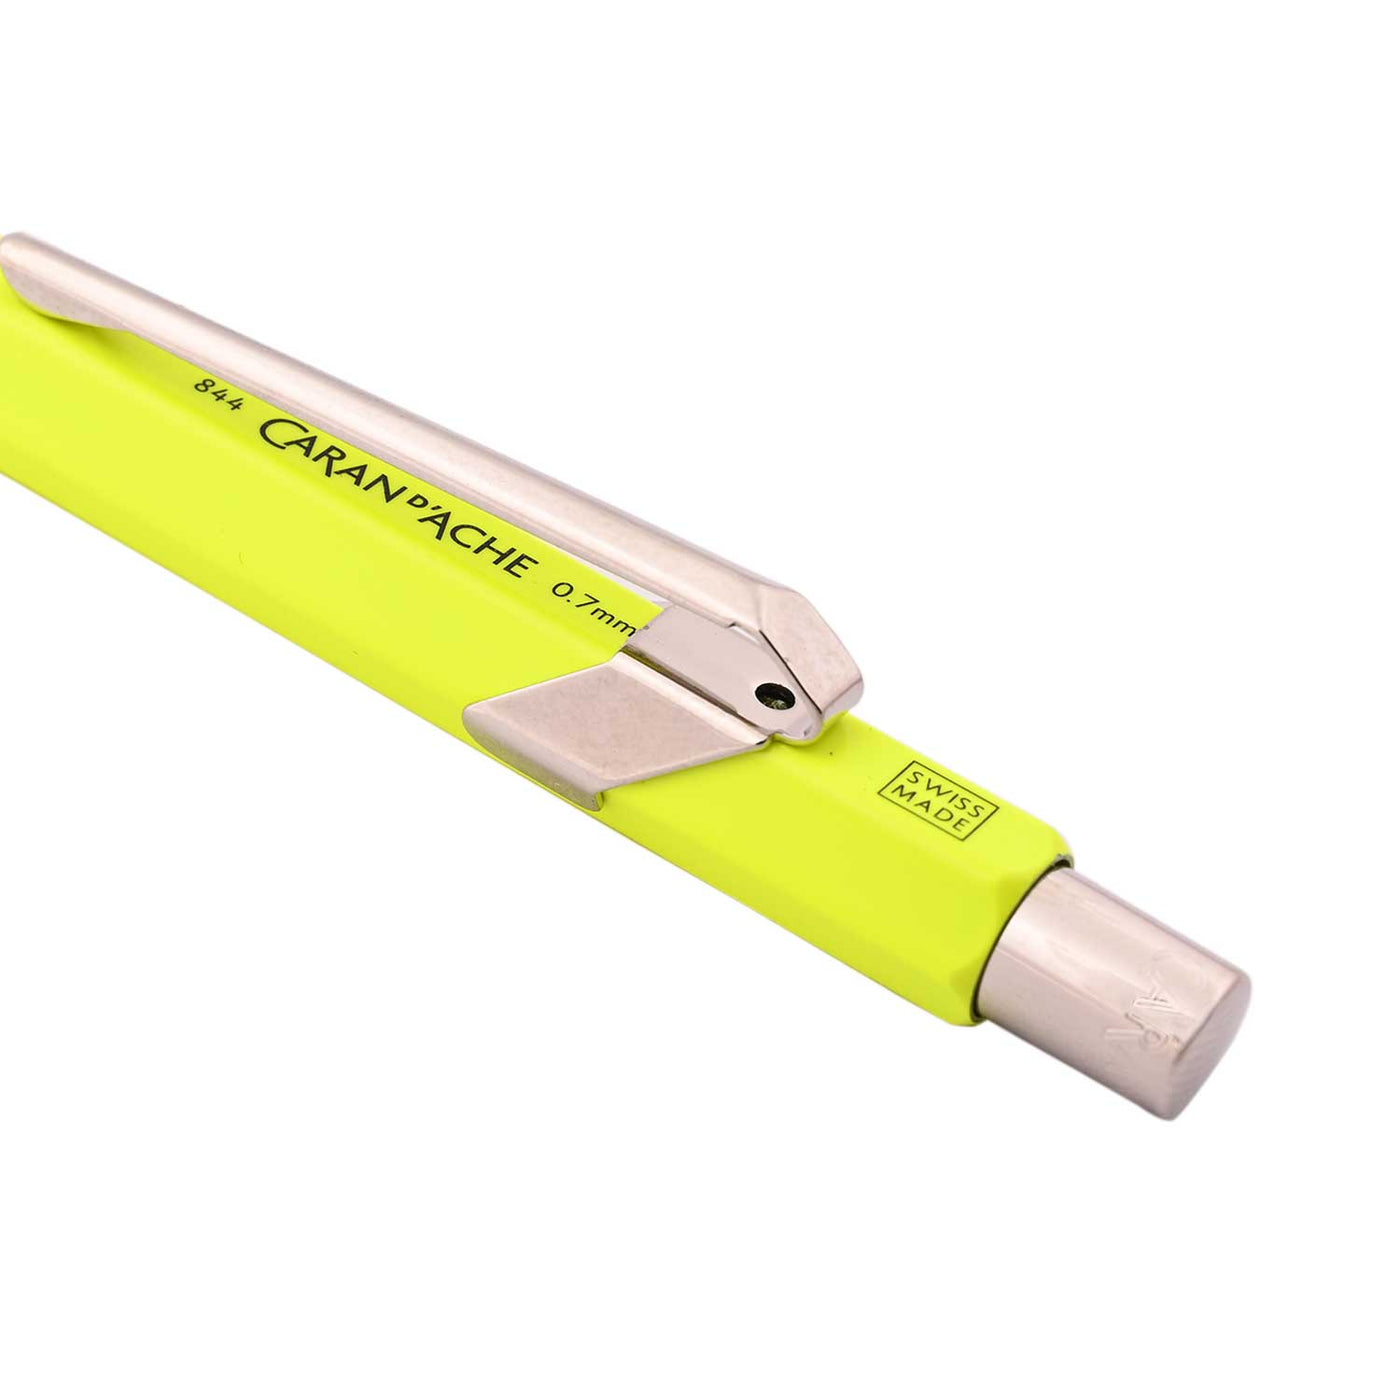 Caran d'Ache 849 Fluo 0.7mm Mechanical Pencil - Yellow 5